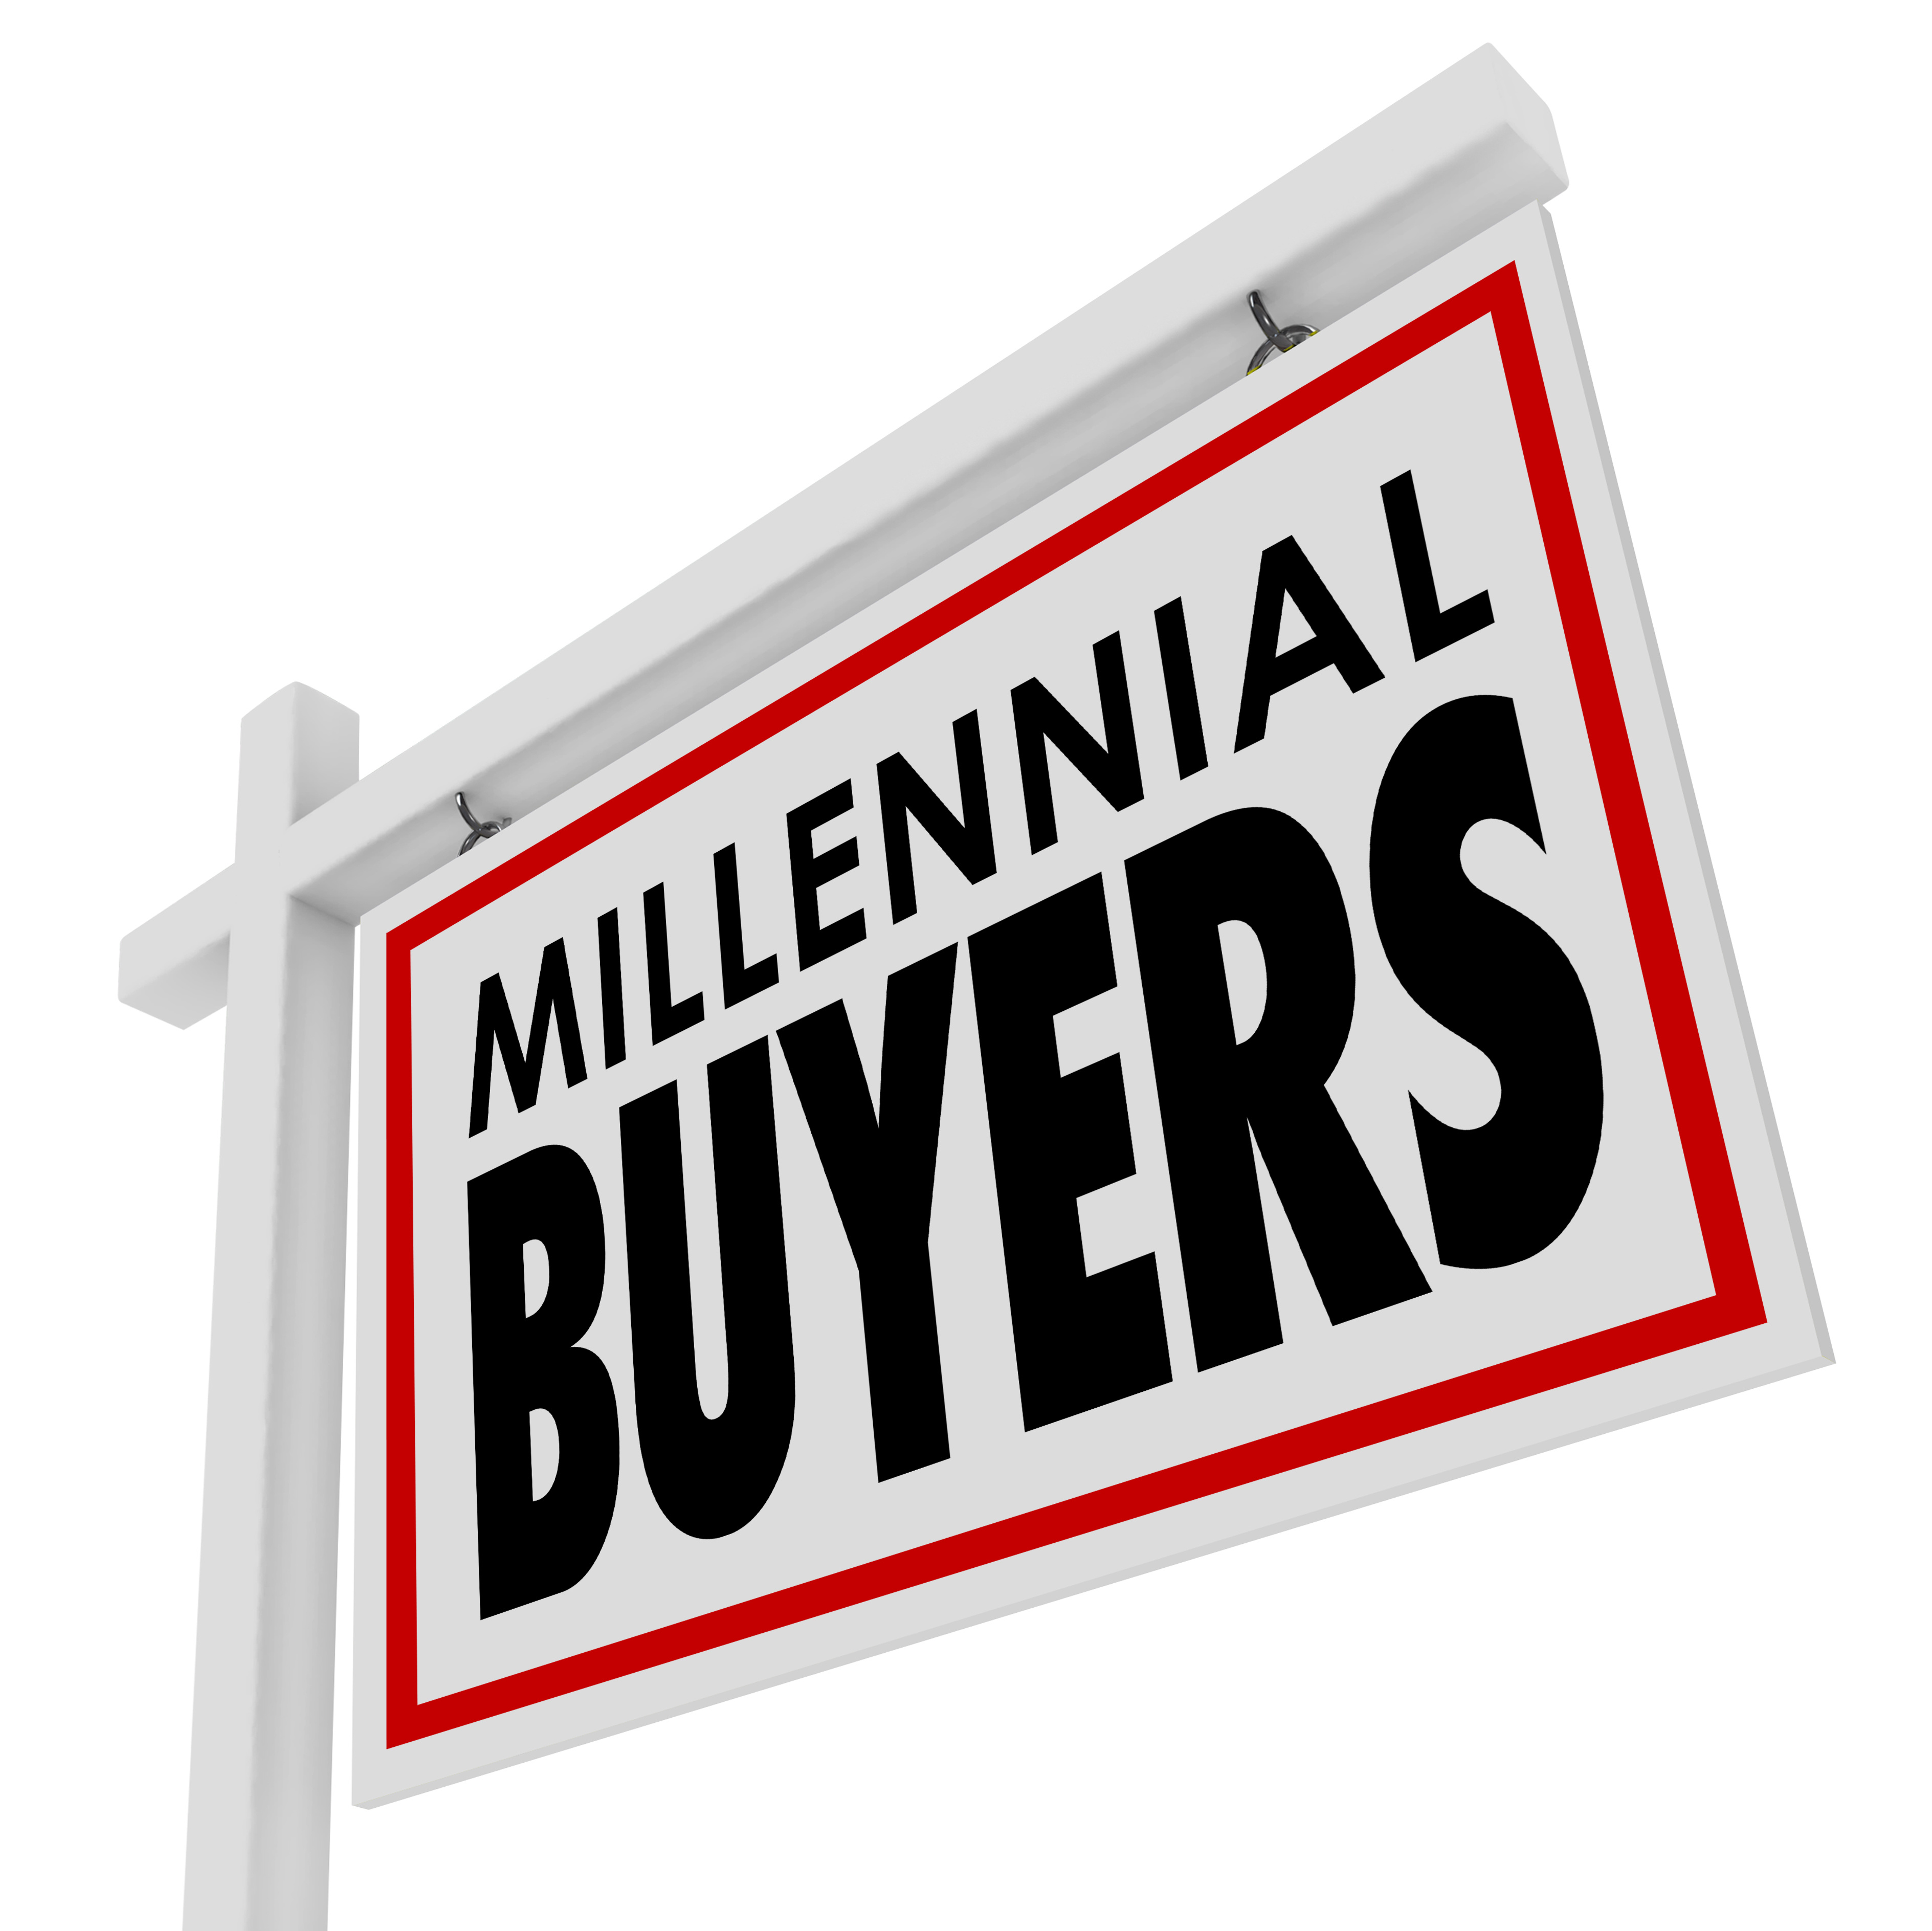 Millennial Home Buyers 